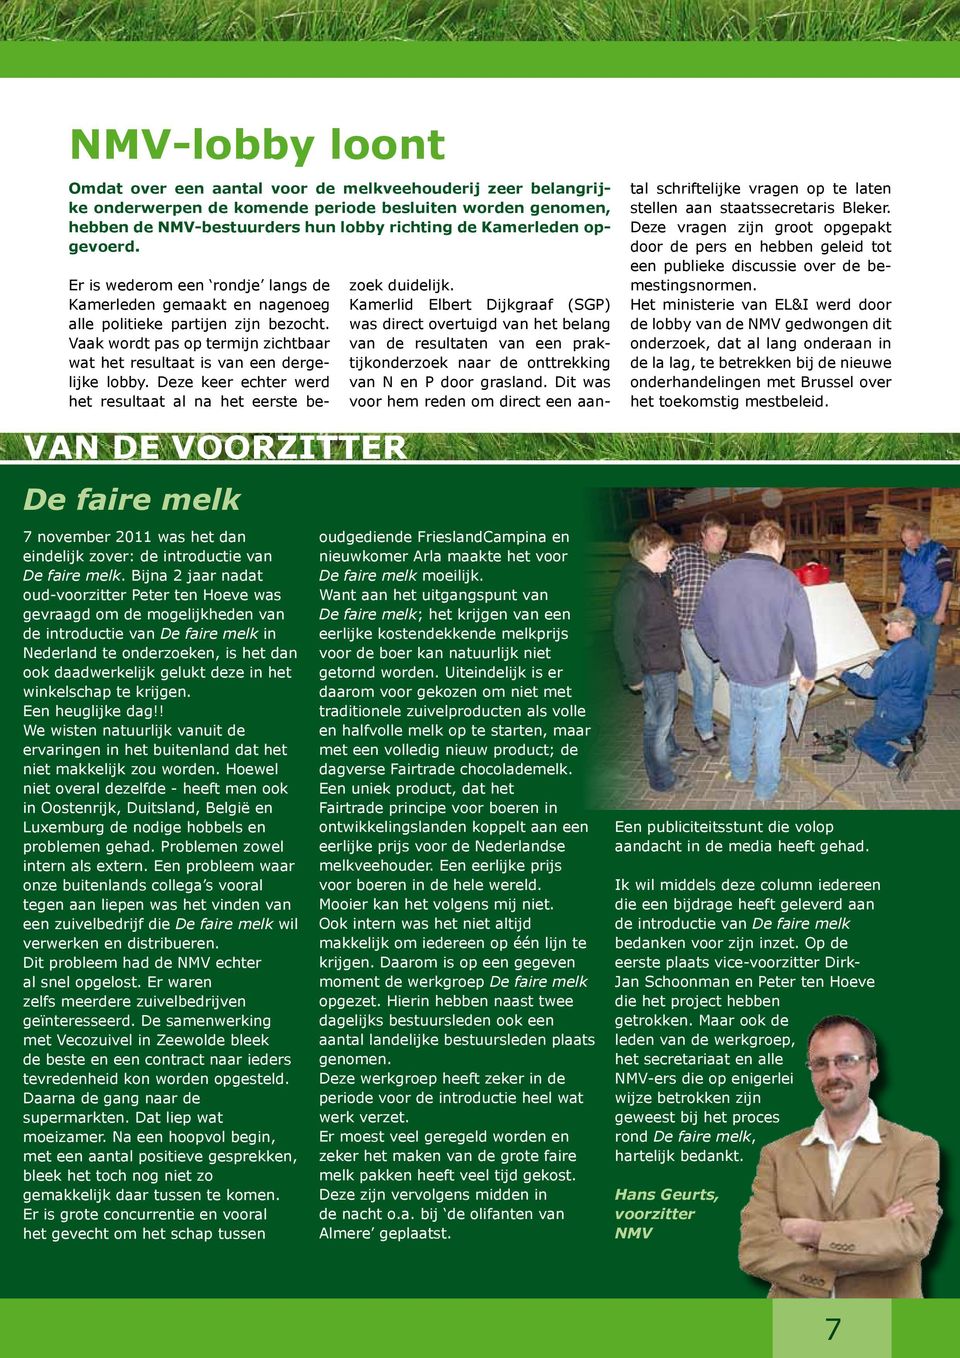 Bijna 2 jaar nadat oud-voorzitter Peter ten Hoeve was gevraagd om de mogelijkheden van de introductie van De faire melk in Nederland te onderzoeken, is het dan ook daadwerkelijk gelukt deze in het